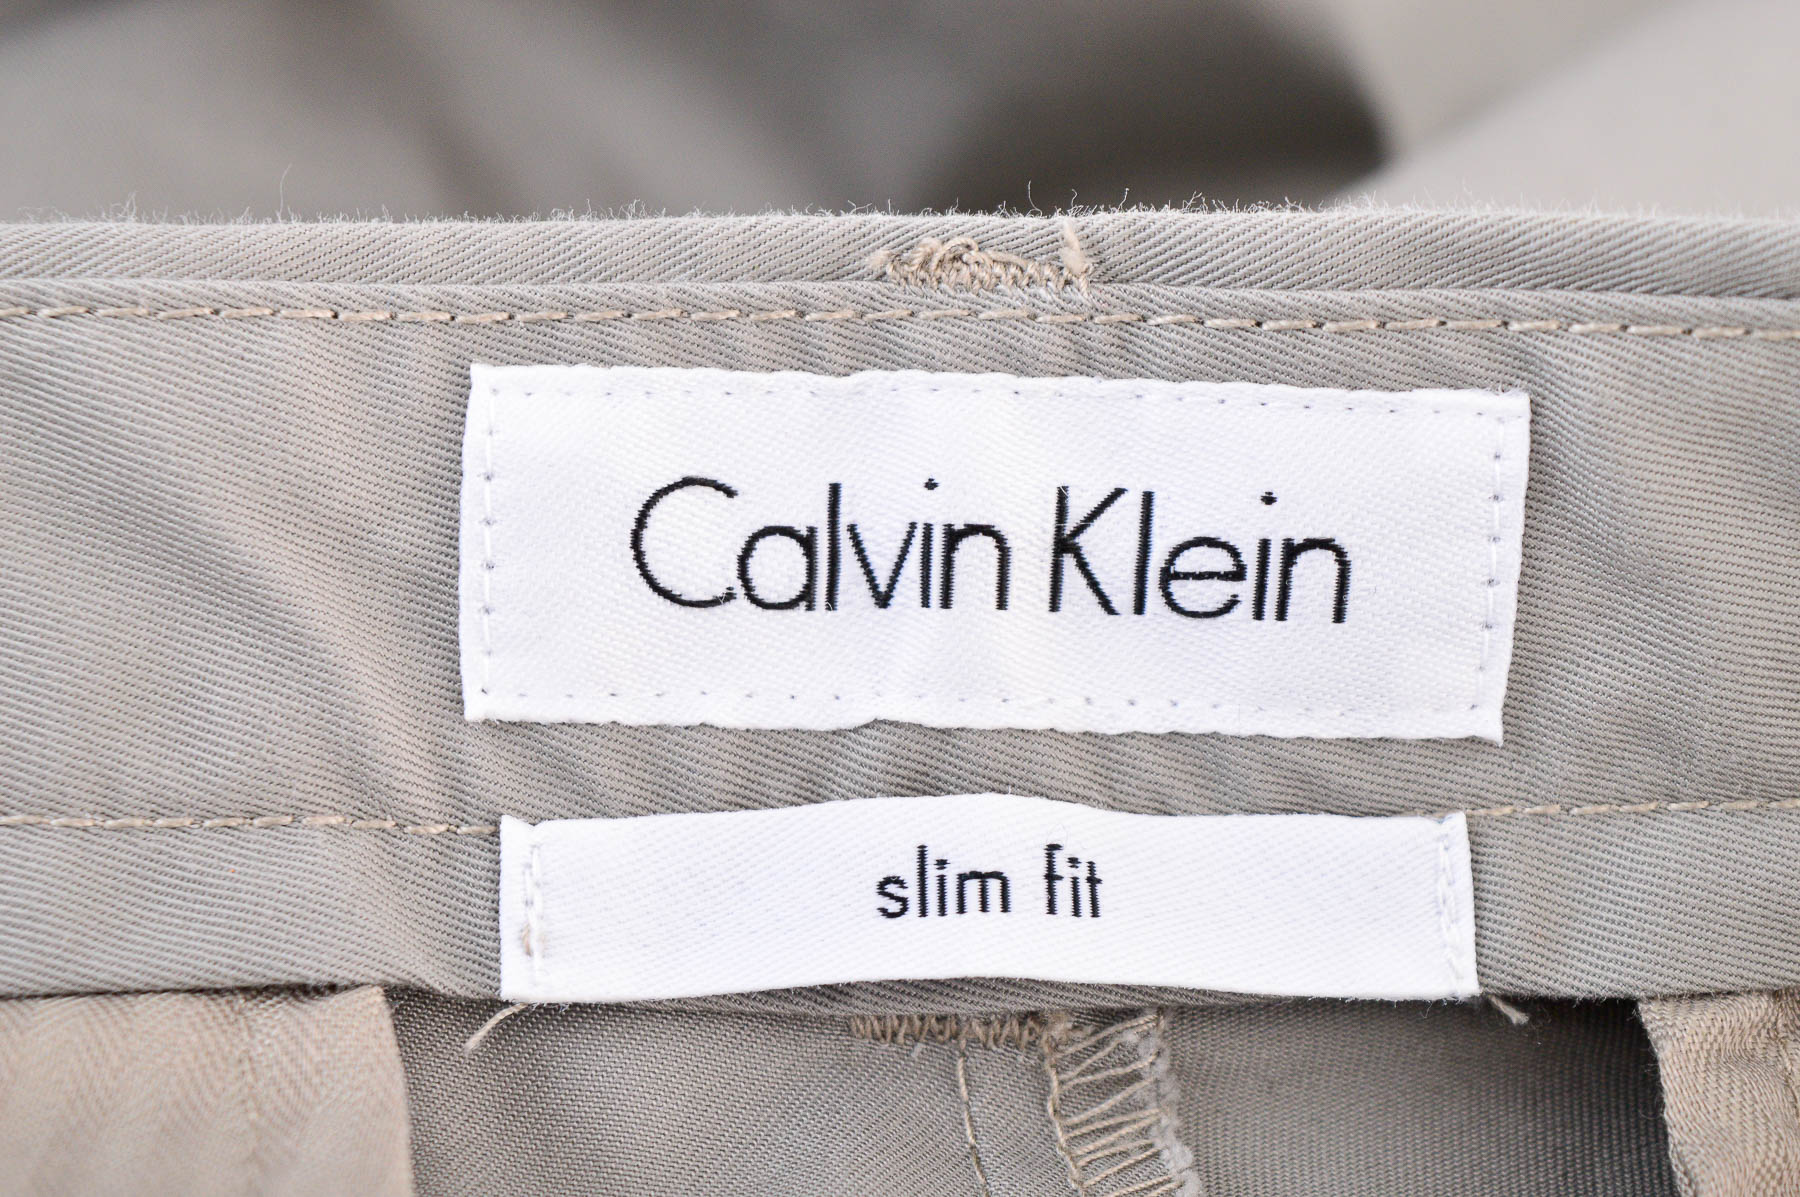 Pantalon pentru bărbați - Calvin Klein - 2